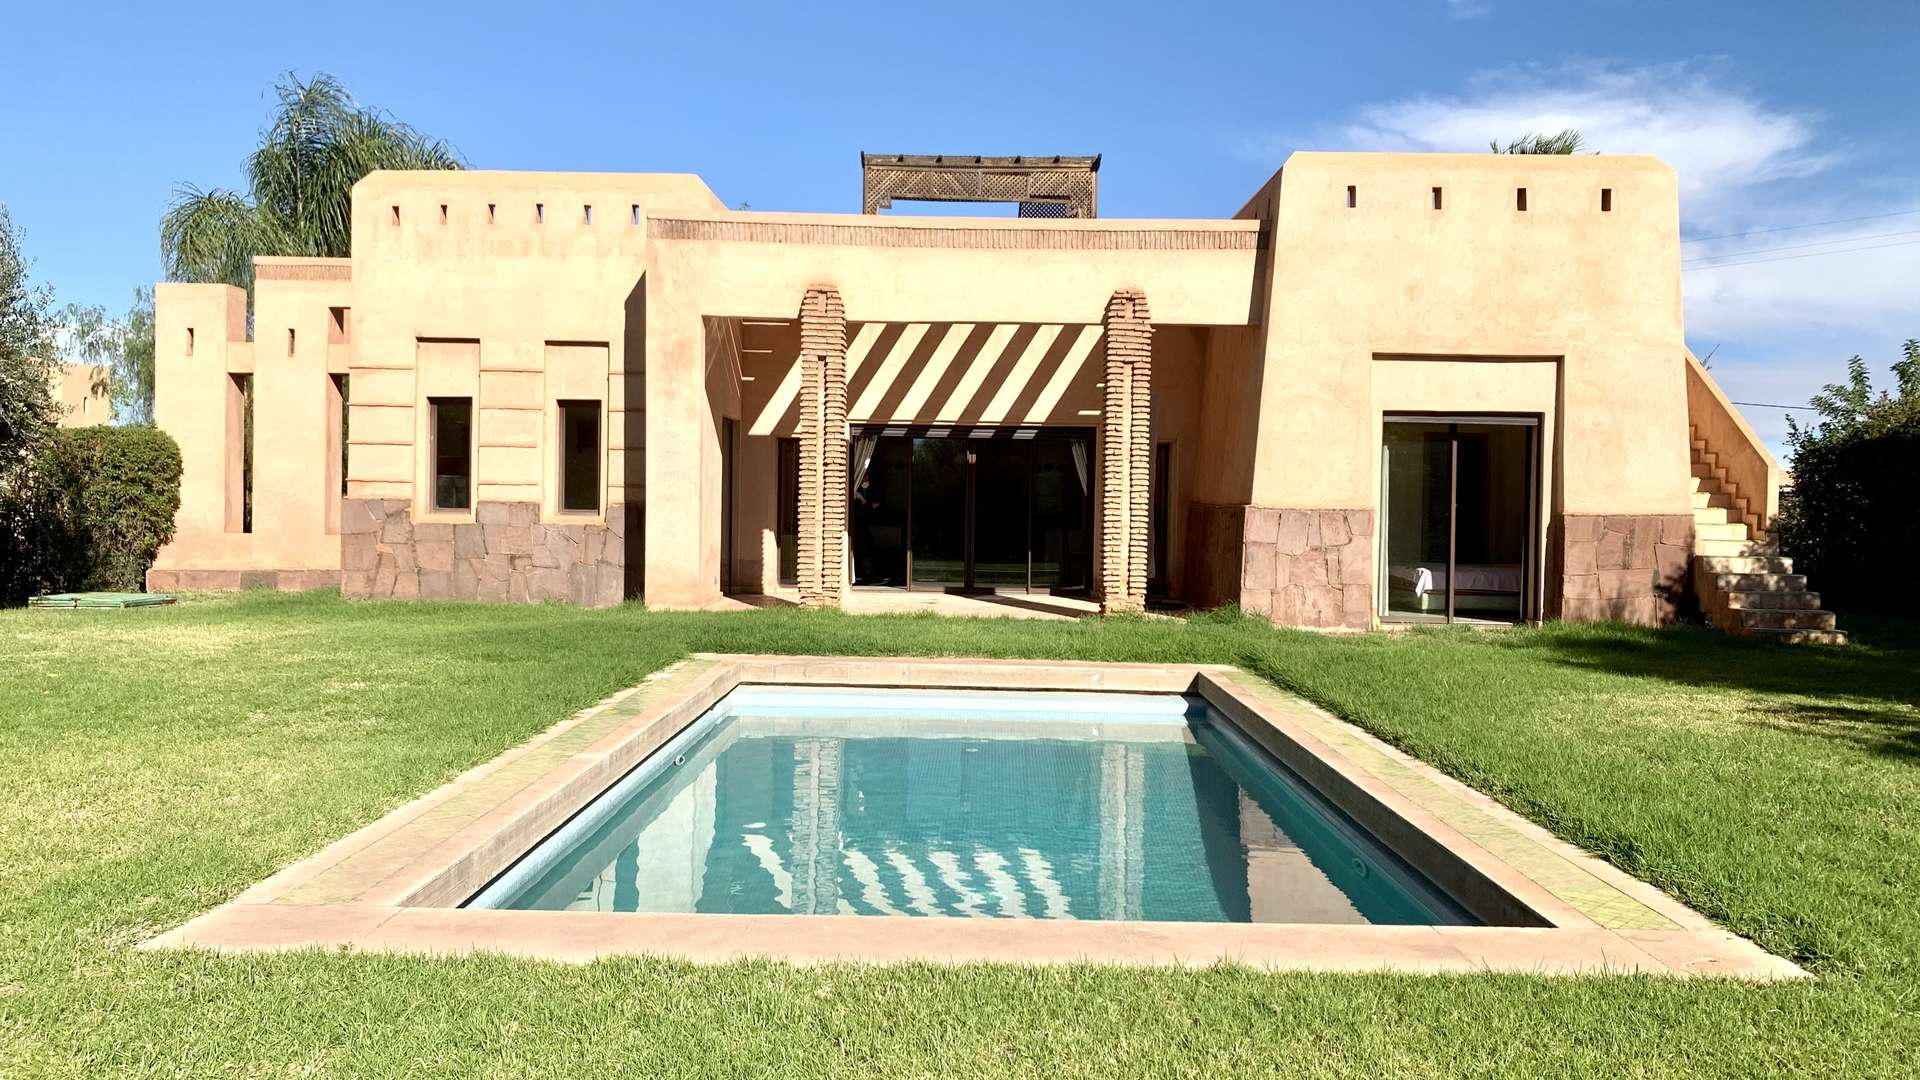 Vente,Villa,Villa 3ch MEUBLÉE avec piscine dans un complexe résidentiel  15 min. du centre de Marrakech,Marrakech,Route de Fès